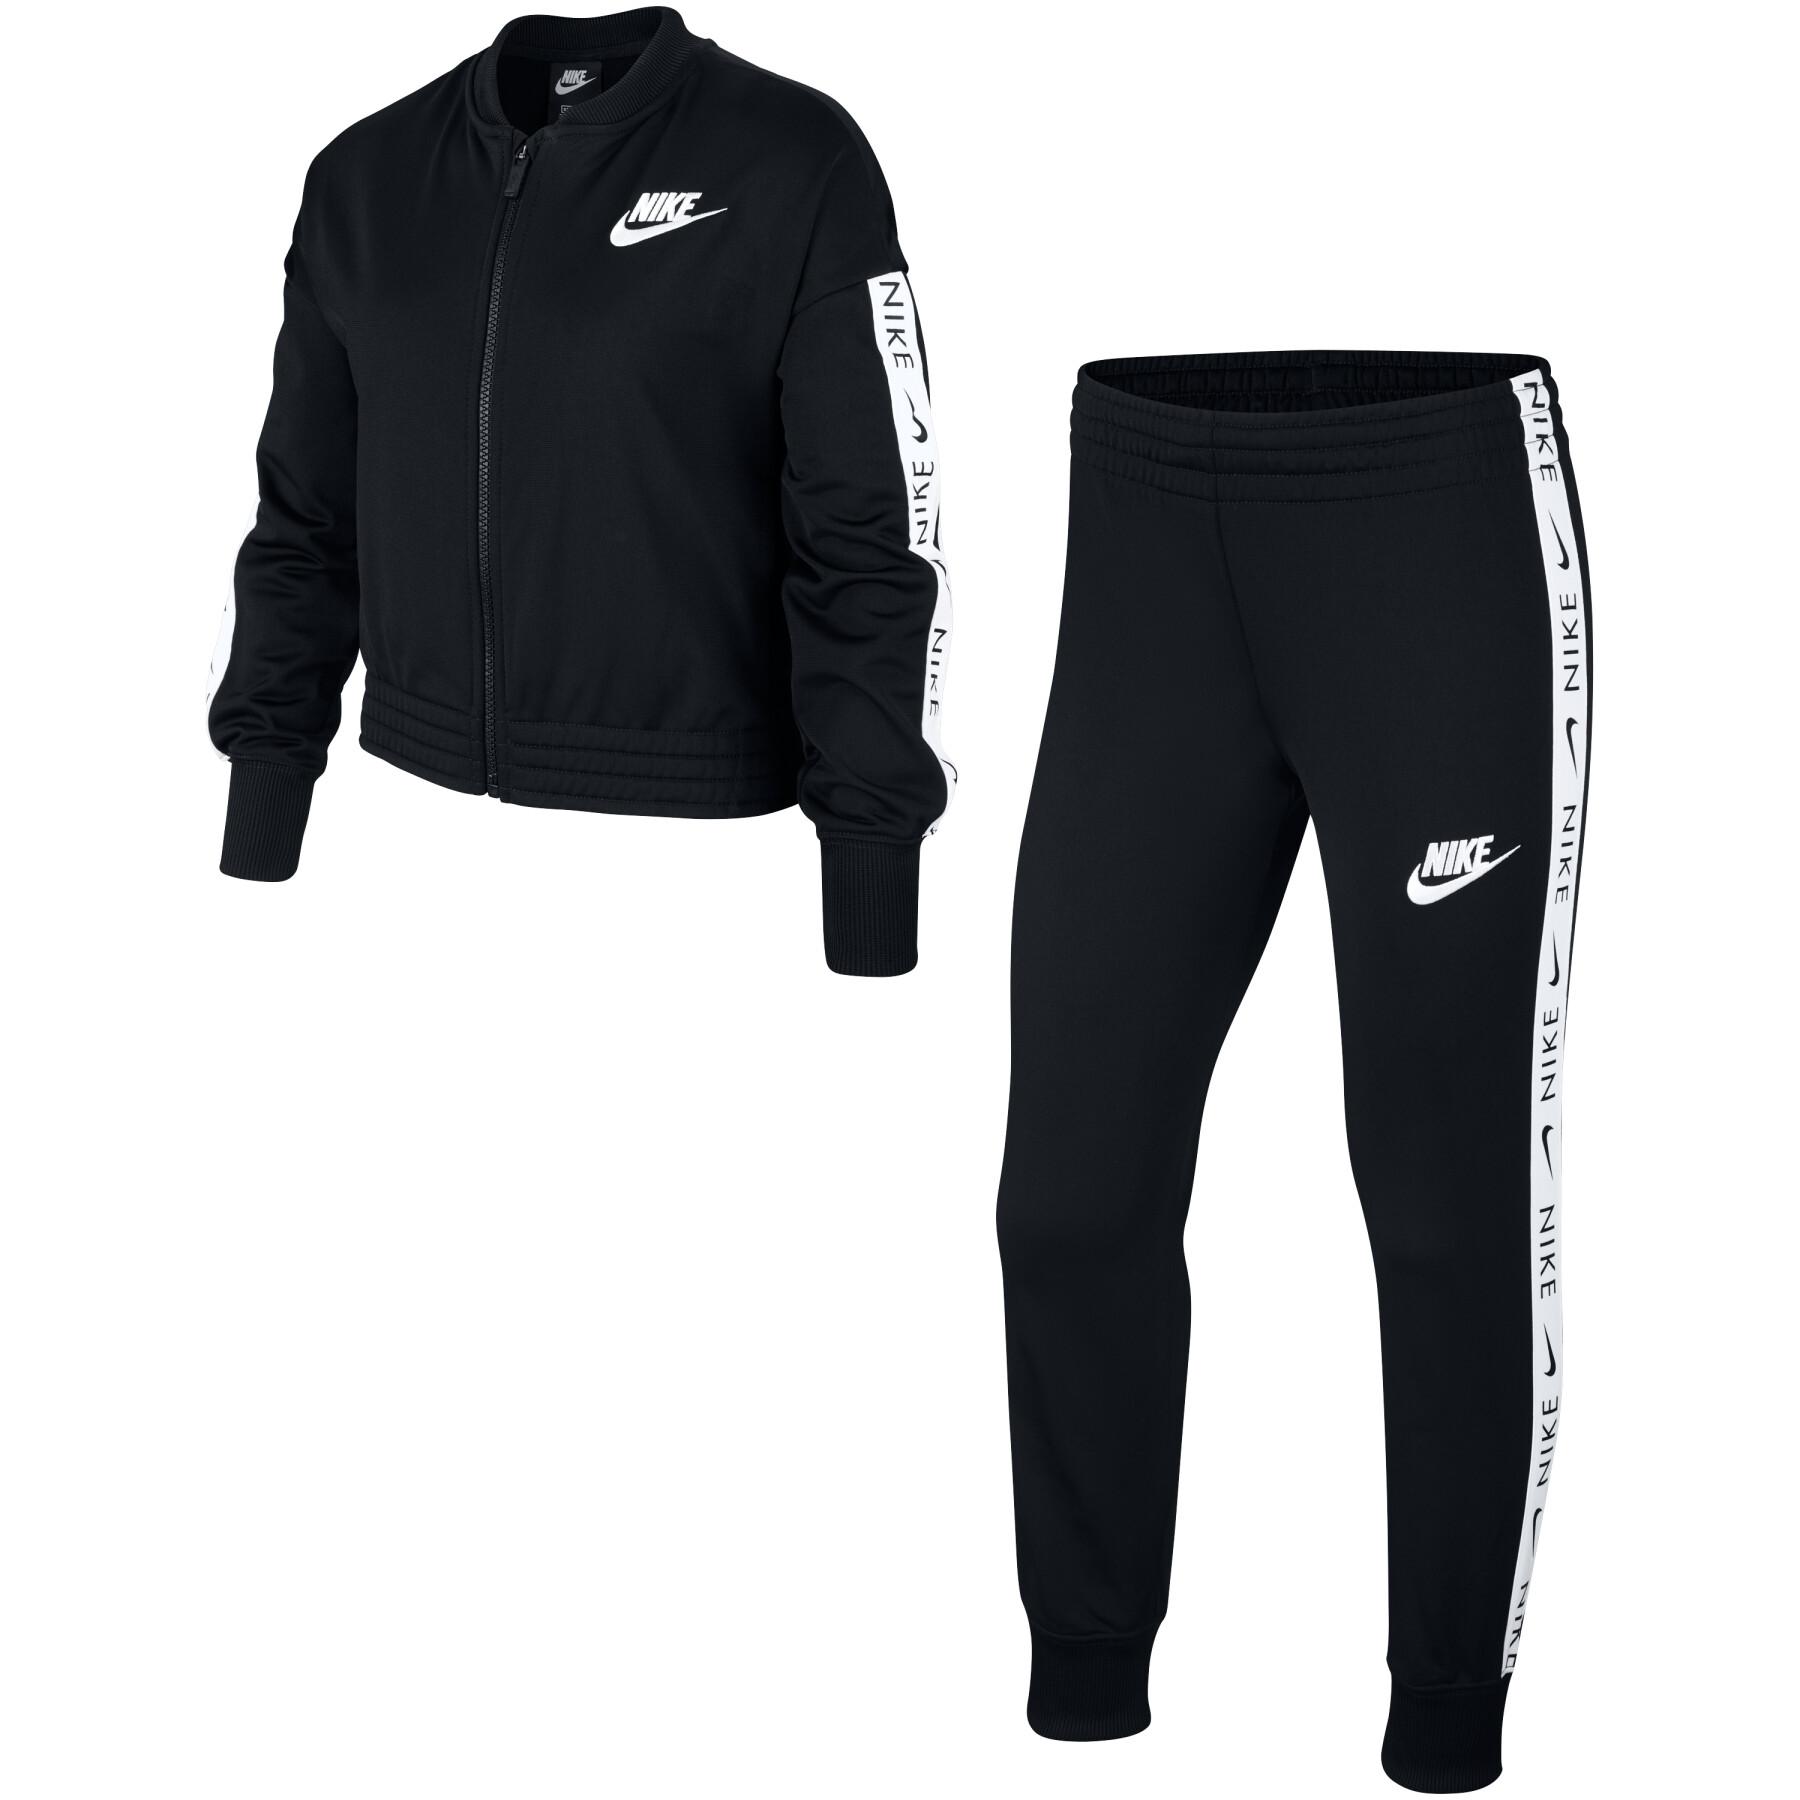 Girl's tracksuit Nike sportswear - Jackets & Tracksuits - Junior's wear -  Handball wear